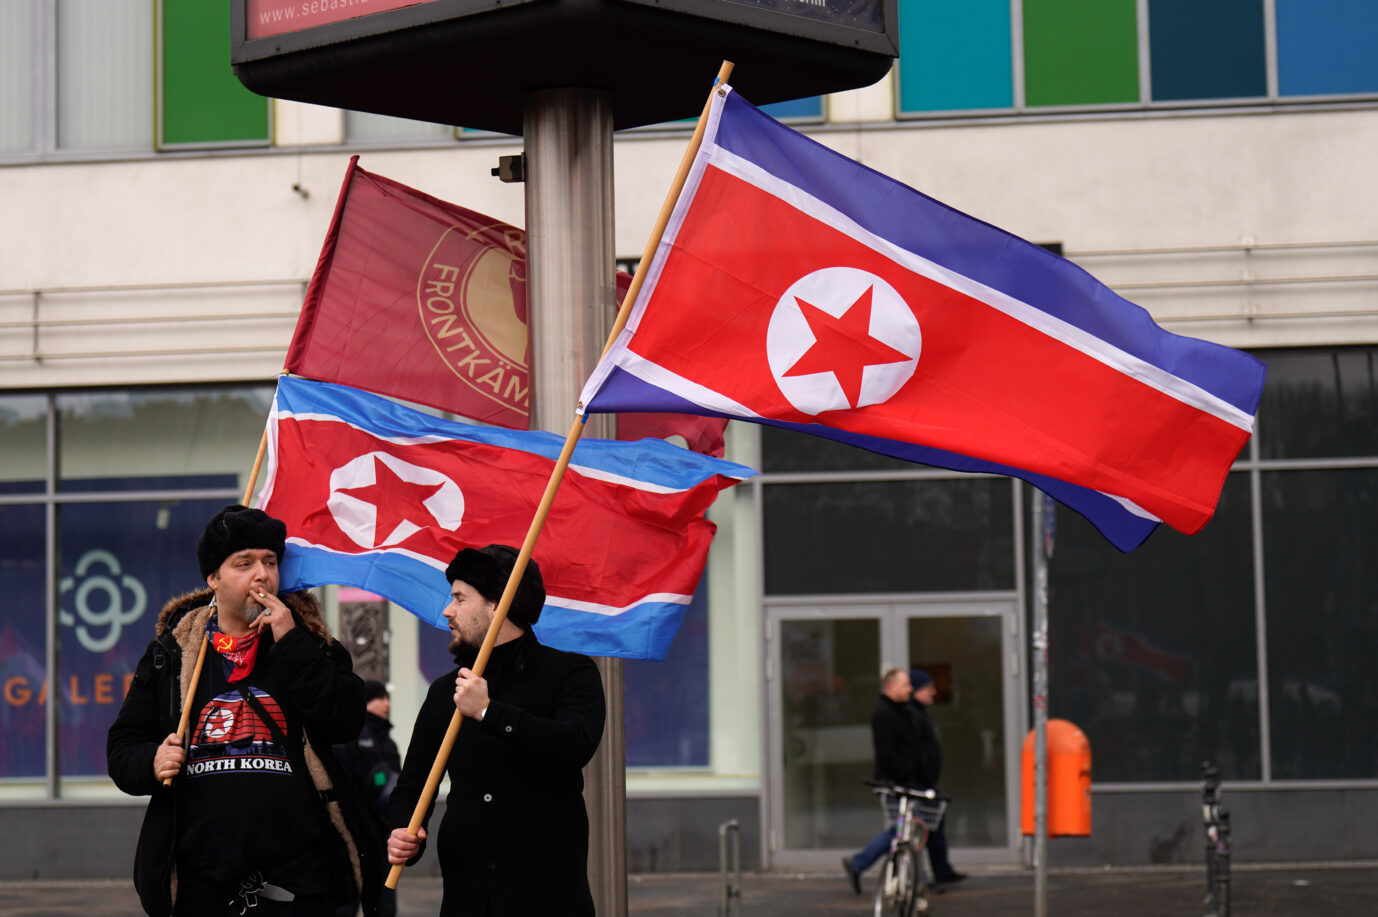 Auf der Luxemburg-Demonstration tummelten sich auch Linke, die Nordkoreas Diktatur toll finden.